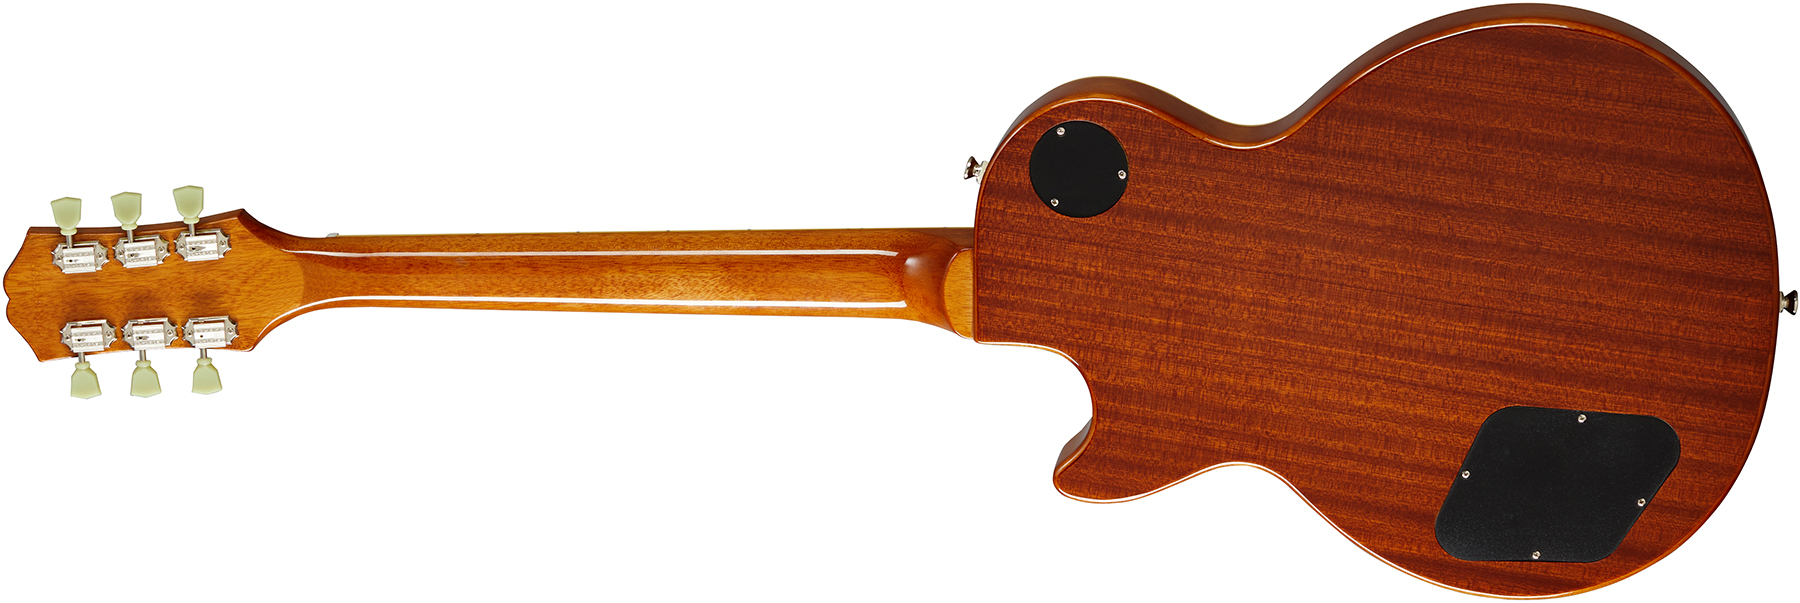 Epiphone Les Paul Standard 50s 2h Ht Rw - Metallic Gold - Enkel gesneden elektrische gitaar - Variation 1